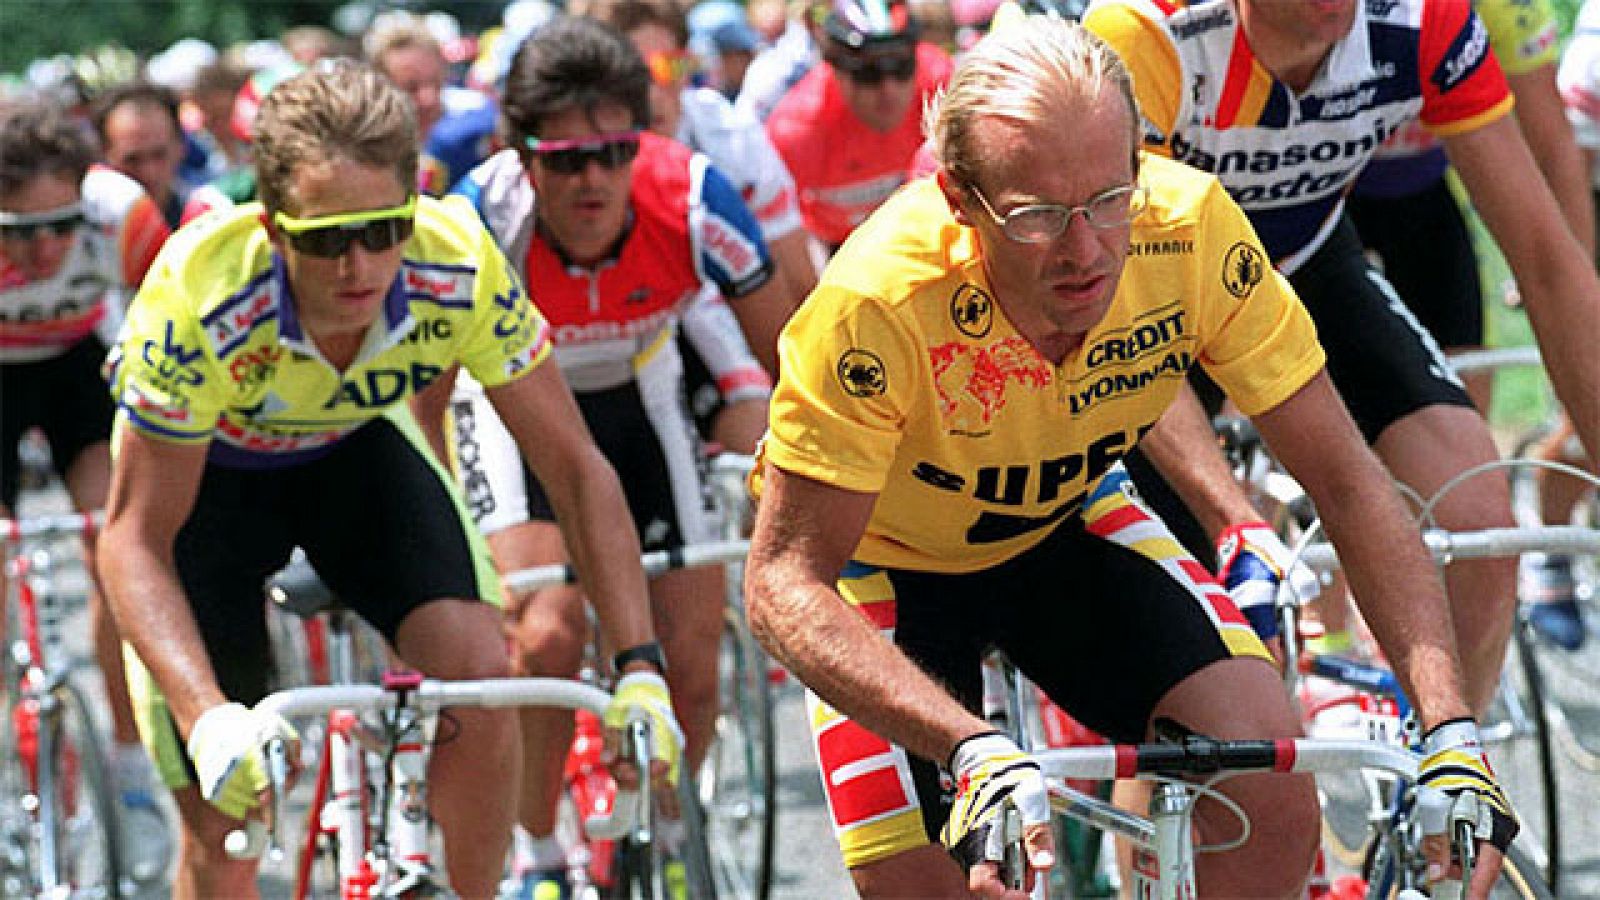 Tras varias etapas en las que las diferencias entre LeMond y Fignon cambiaban de un día para otro, llegó la 17ª etapa, con final en Alpe d'Huez, en la cual vencería el neerlandés Gert-Jan Theunisse. Perico Delgado, que fue segundo en aquella etapa (y